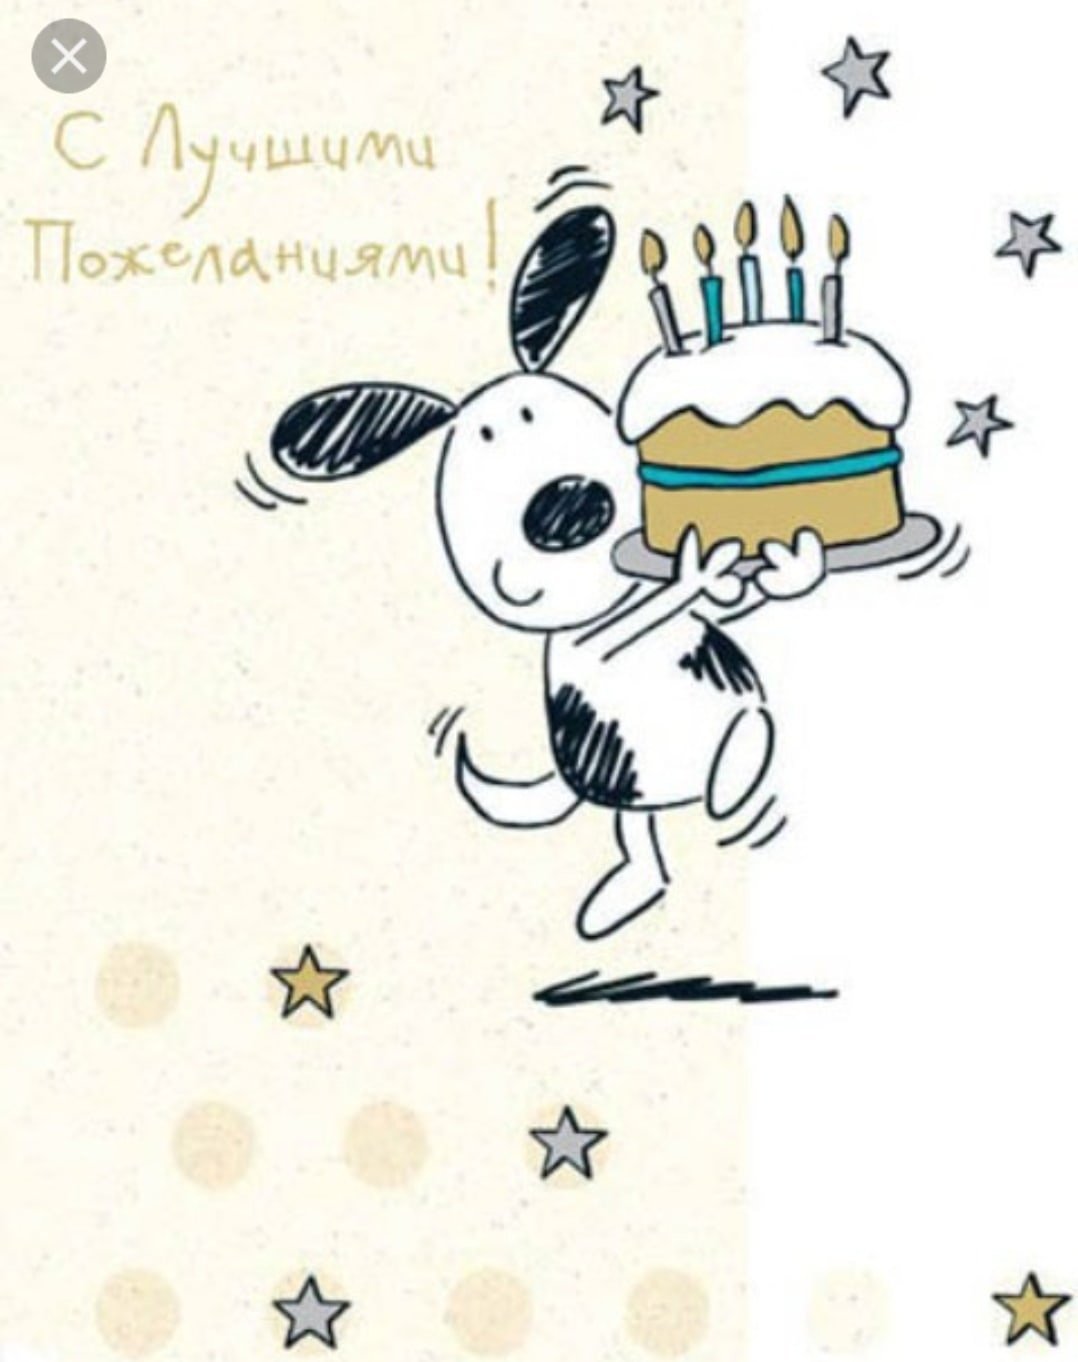 Твоя открытка с днем рождения. С днем рождения. Открытка с днём рождения. Стильные открытки с днем рождения. С͇ д͇н͇е͇ р͇о͇ж͇д͇е͇н͇и͇я͇.